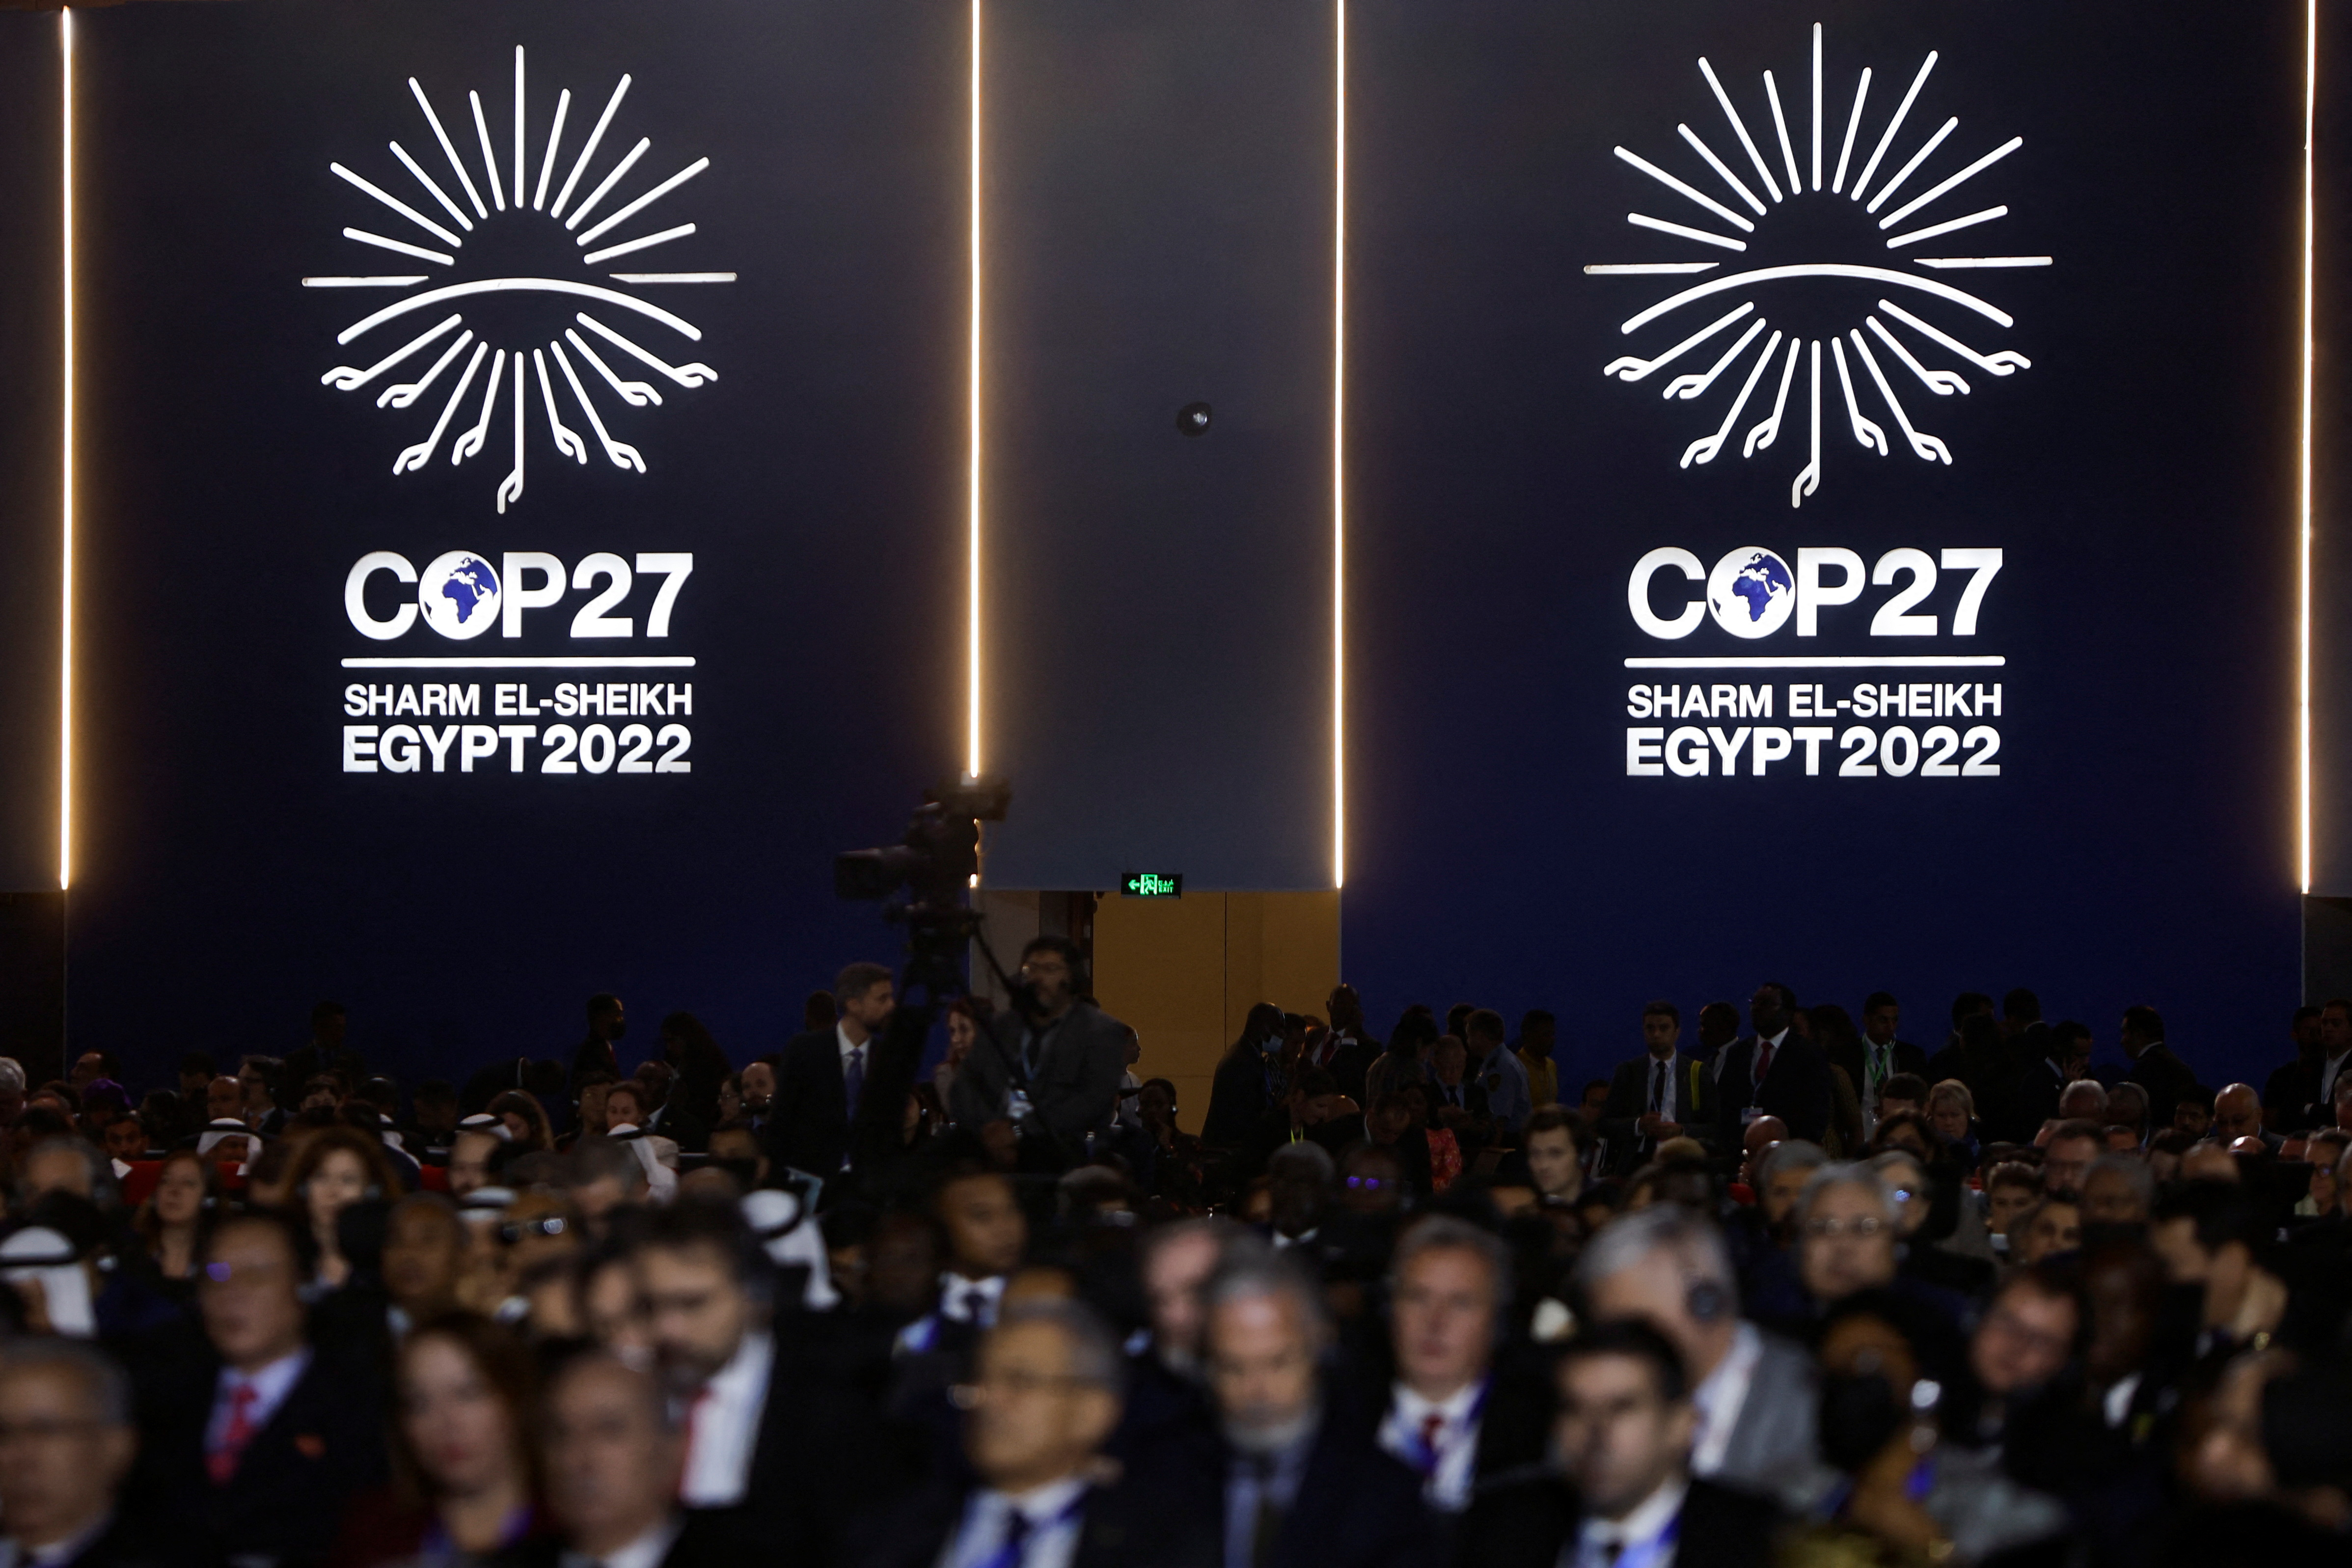 COP27 Cumbre del Clima de Egipto